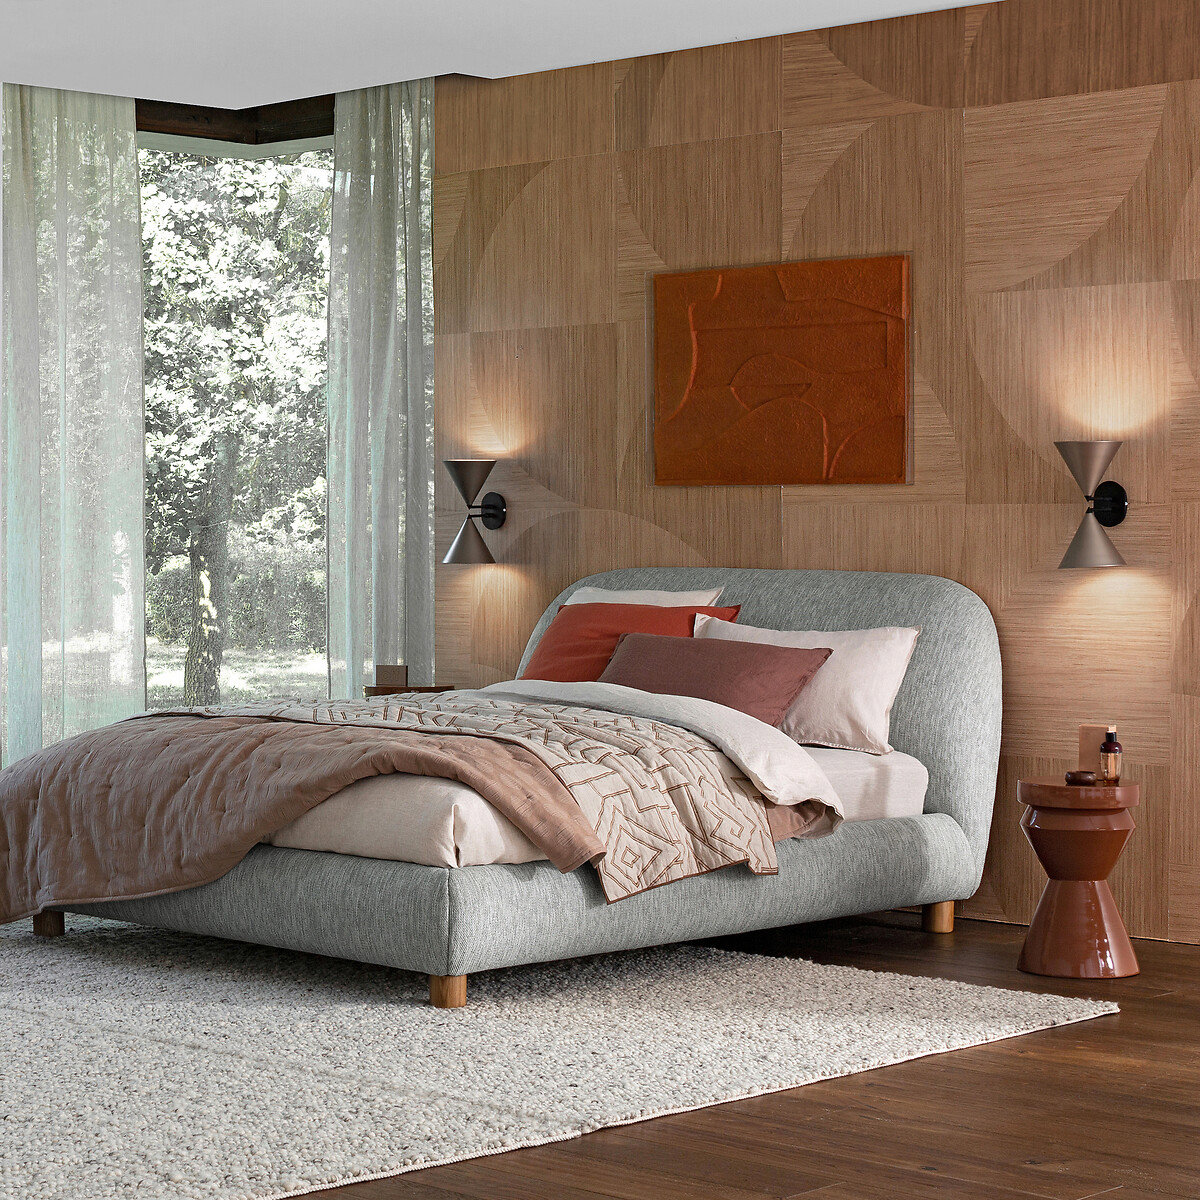 Habitación cálida de pared de madera y cuadro sobre el cabecero. La cama es robusta, en color gris y al costado un ventanal con luz natural. En el suelo se ha puesto una alfombra delgada en color gris. 